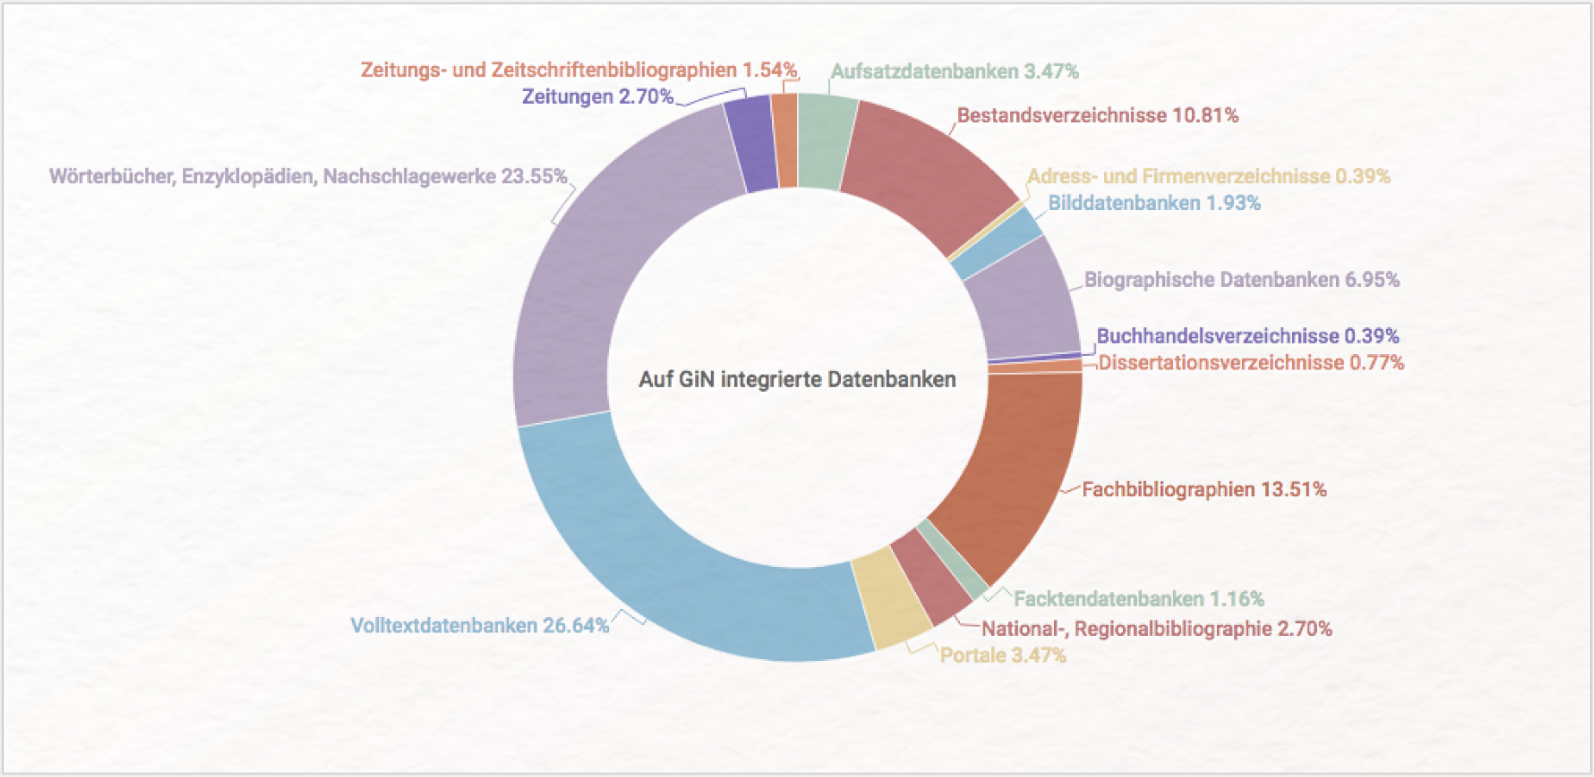 Kreisdiagramm der auf GiN integrierten Datenbanken